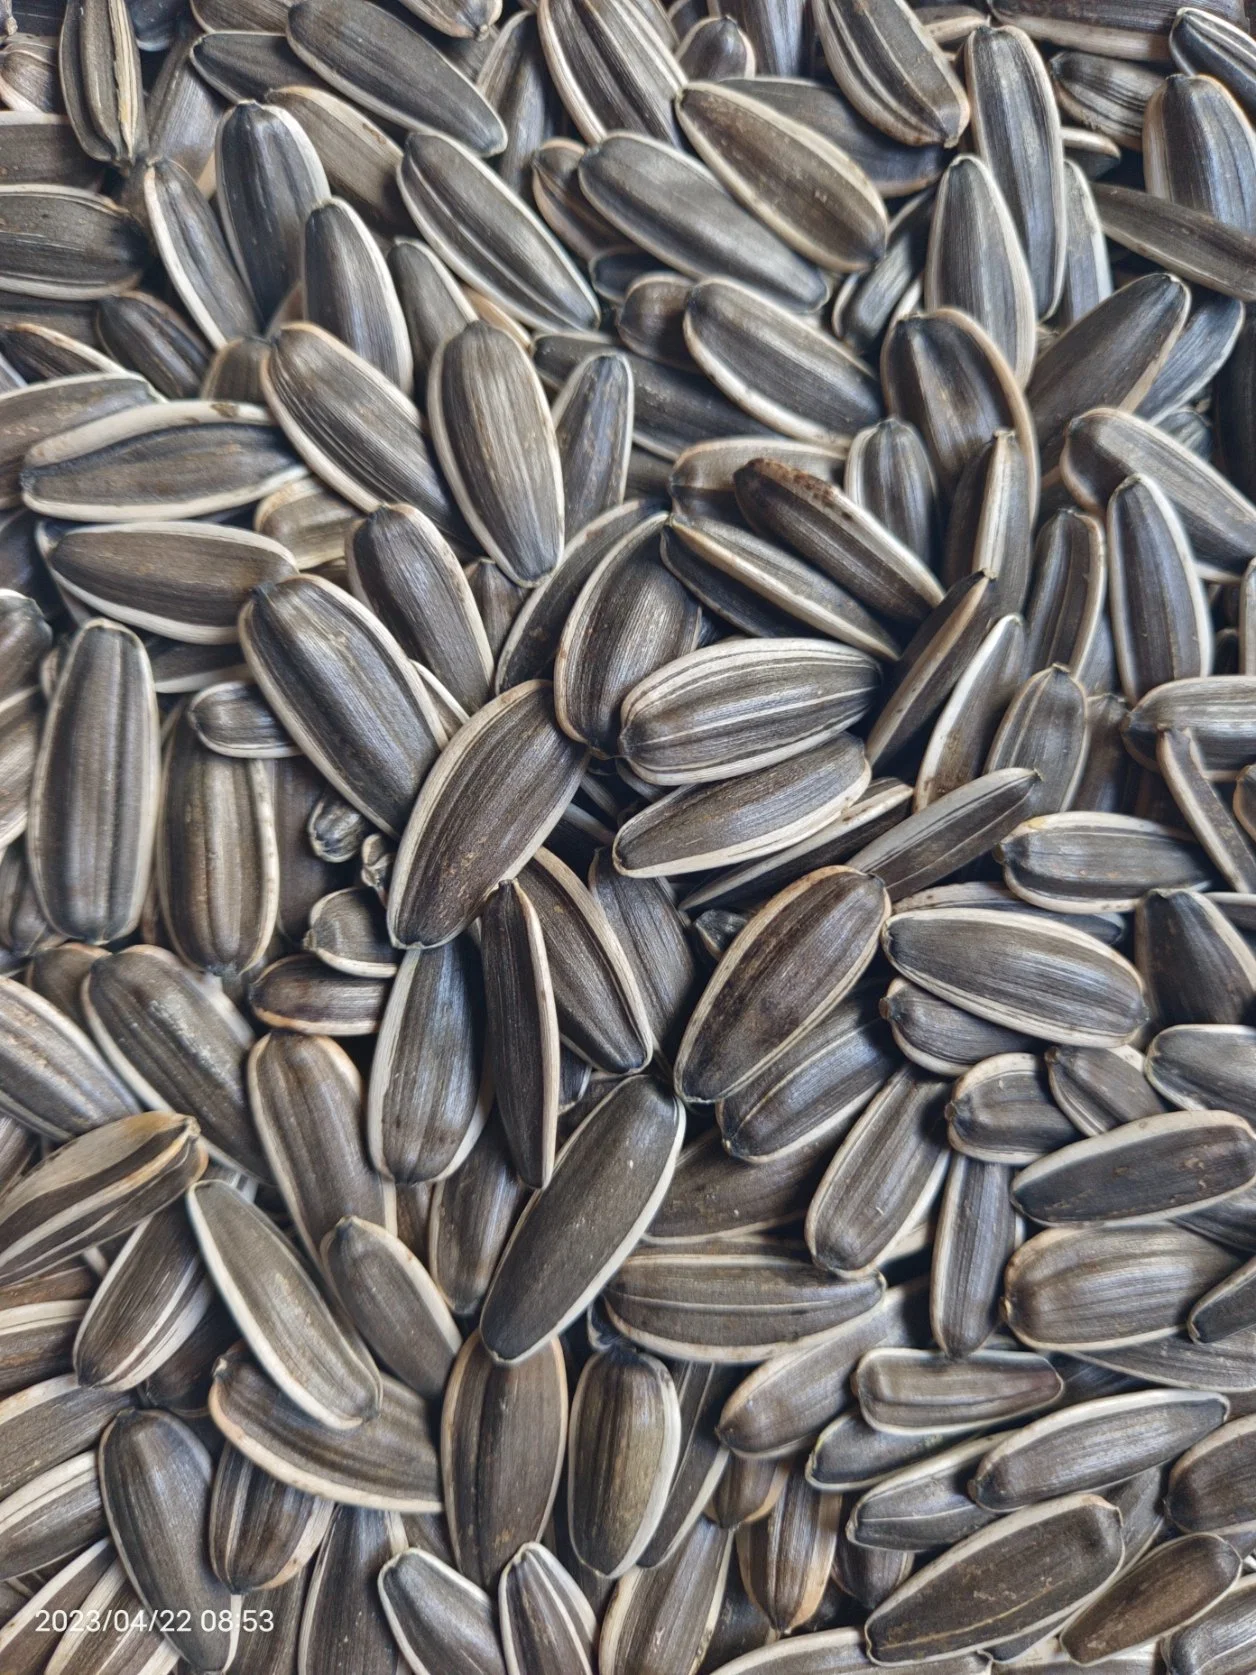 601 semillas de girasol granos de semillas de girasol de rayas negras Raw